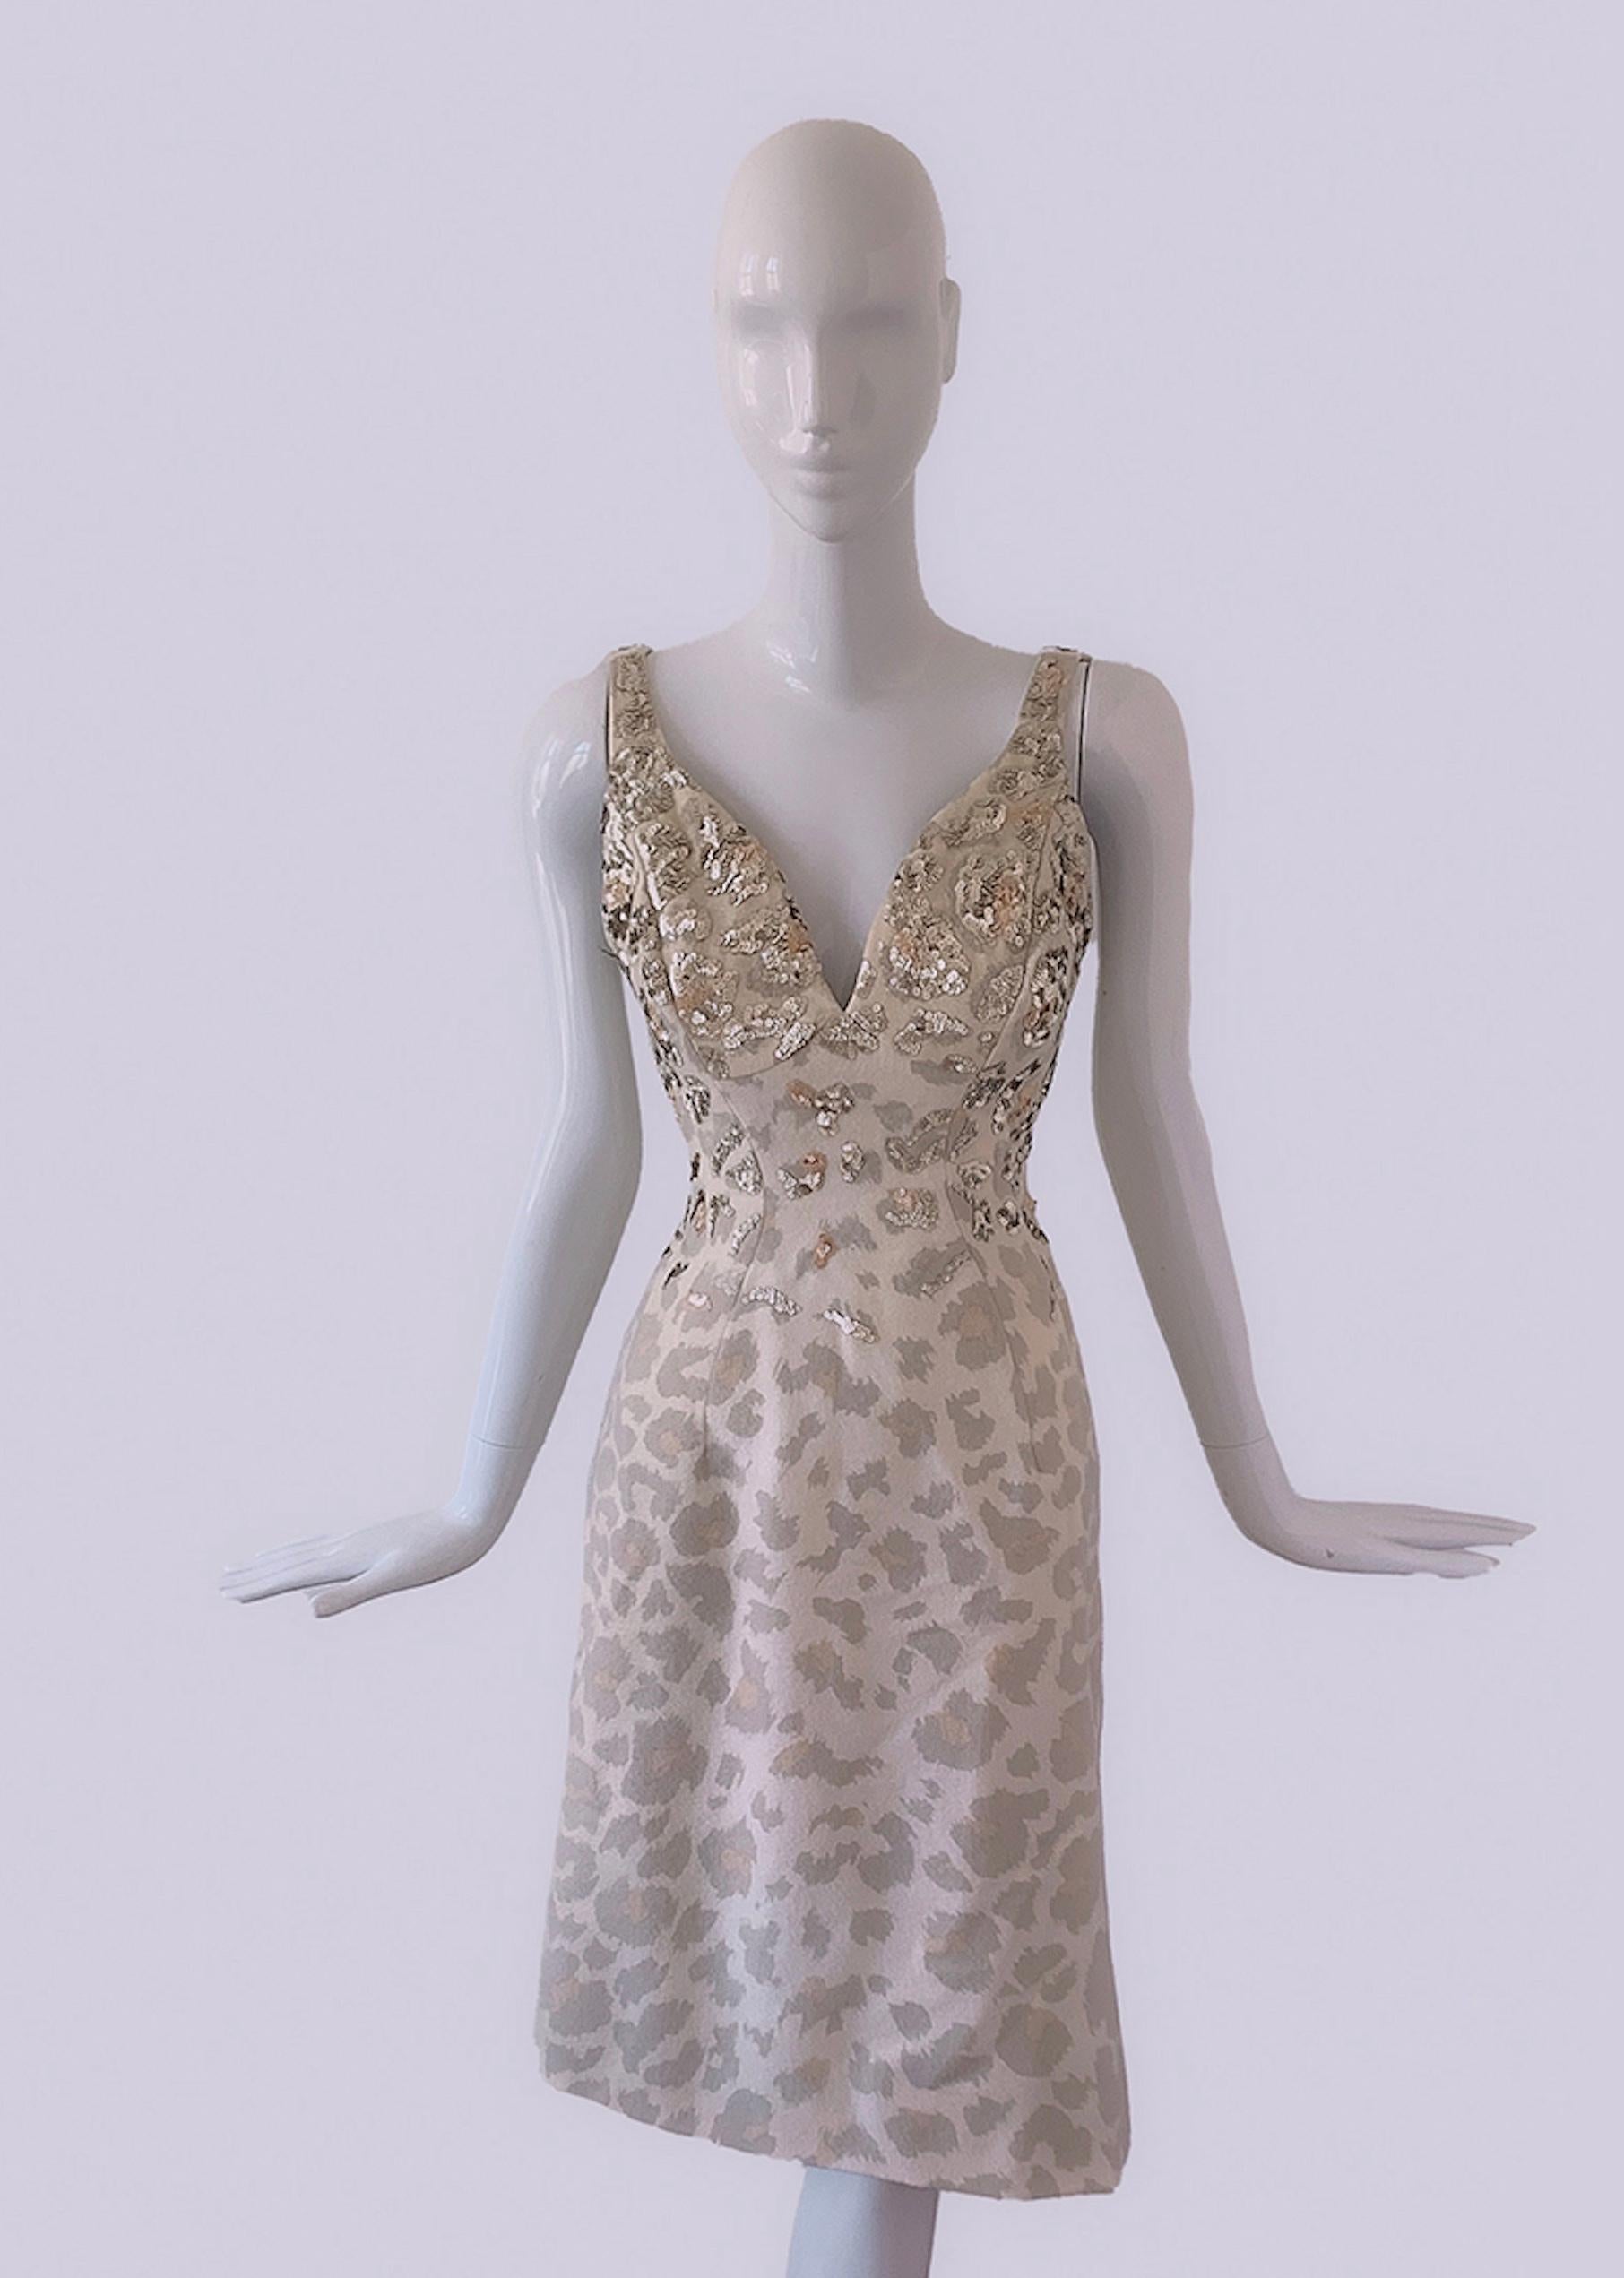 
STUNNING robe iconique Thierry Mugler Couture de la Collectional 2001. Robe de défilé extrêmement rare et documentée.

Robe à imprimé léo abstrait avec les plus beaux sequins pailletés embellis à la main. Ce look est si reconnaissable et célèbre